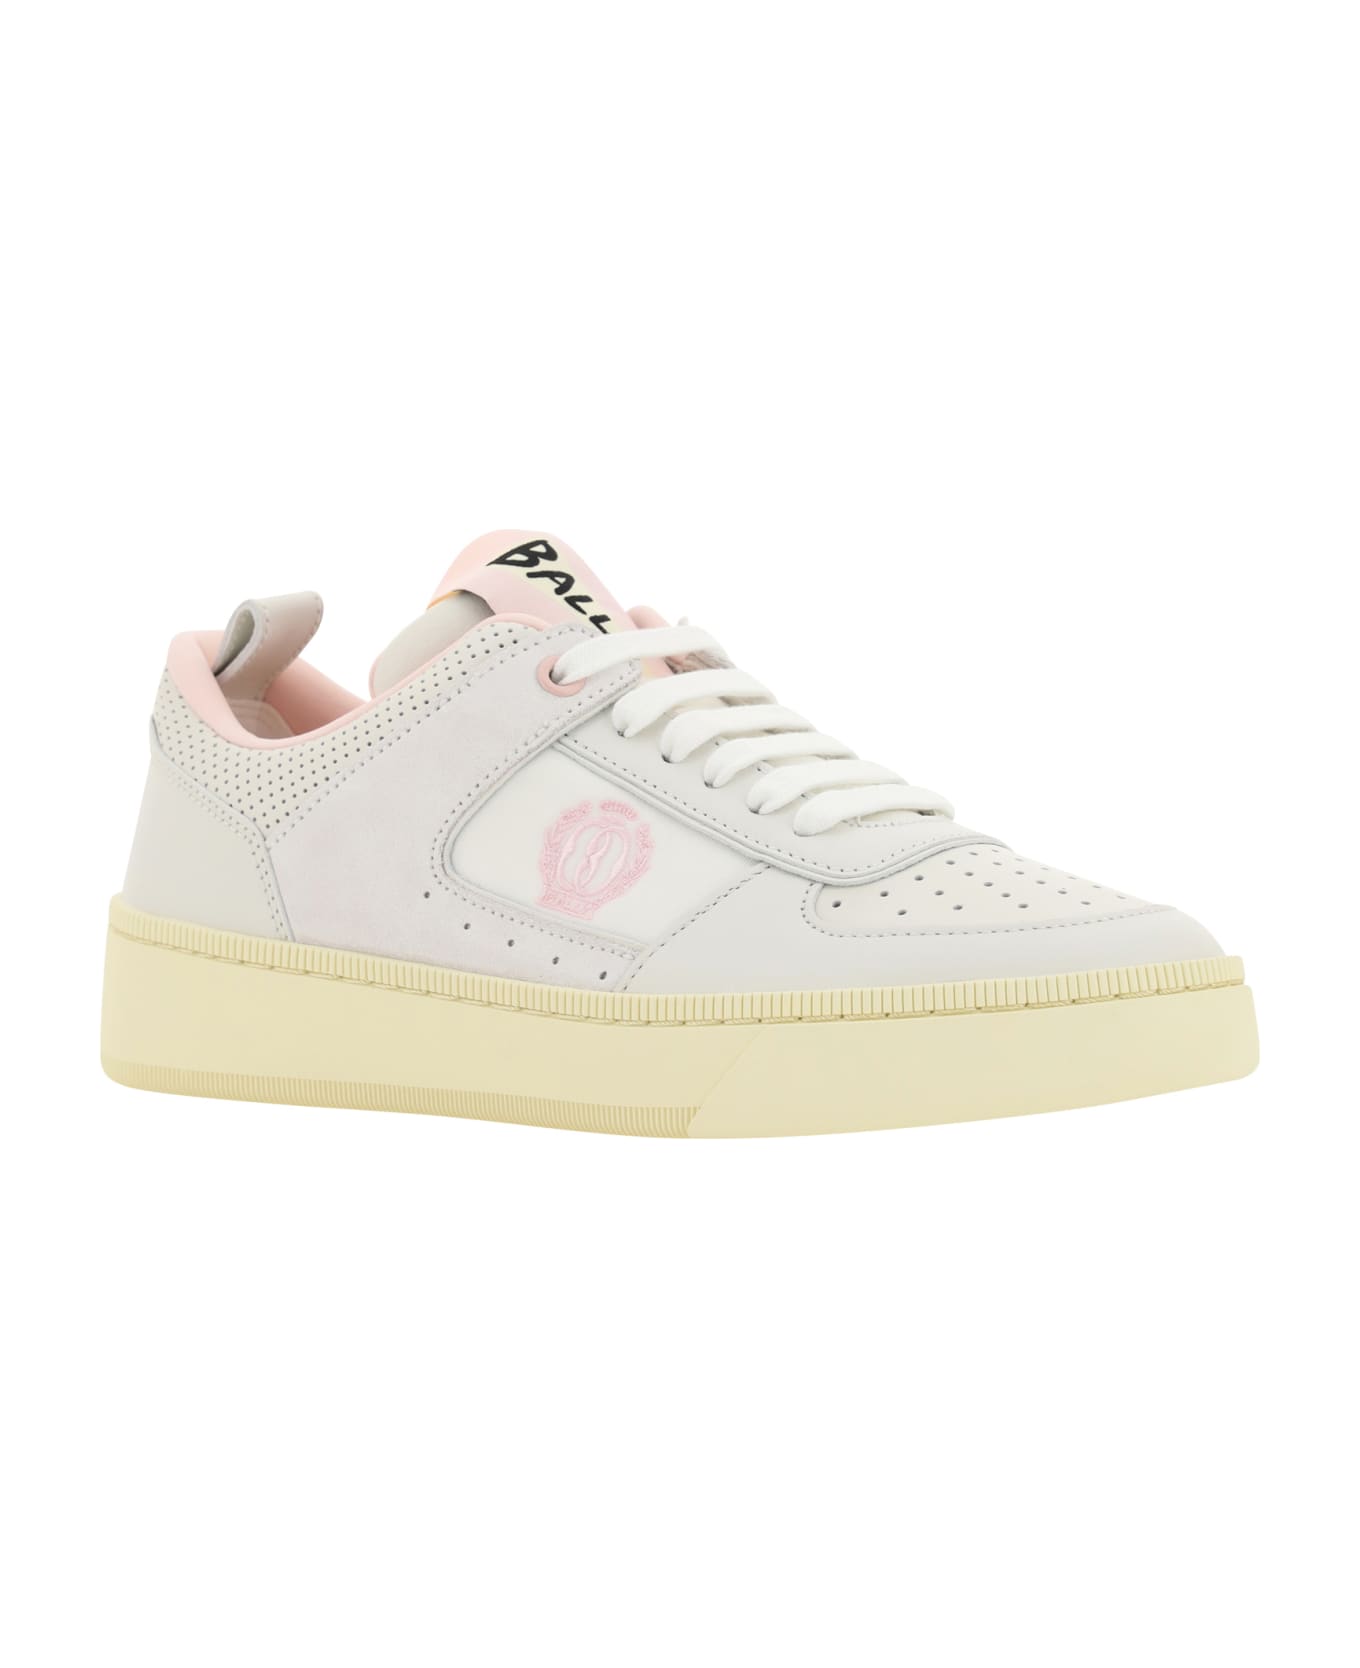 Bally Sneakers - White/rosa スニーカー